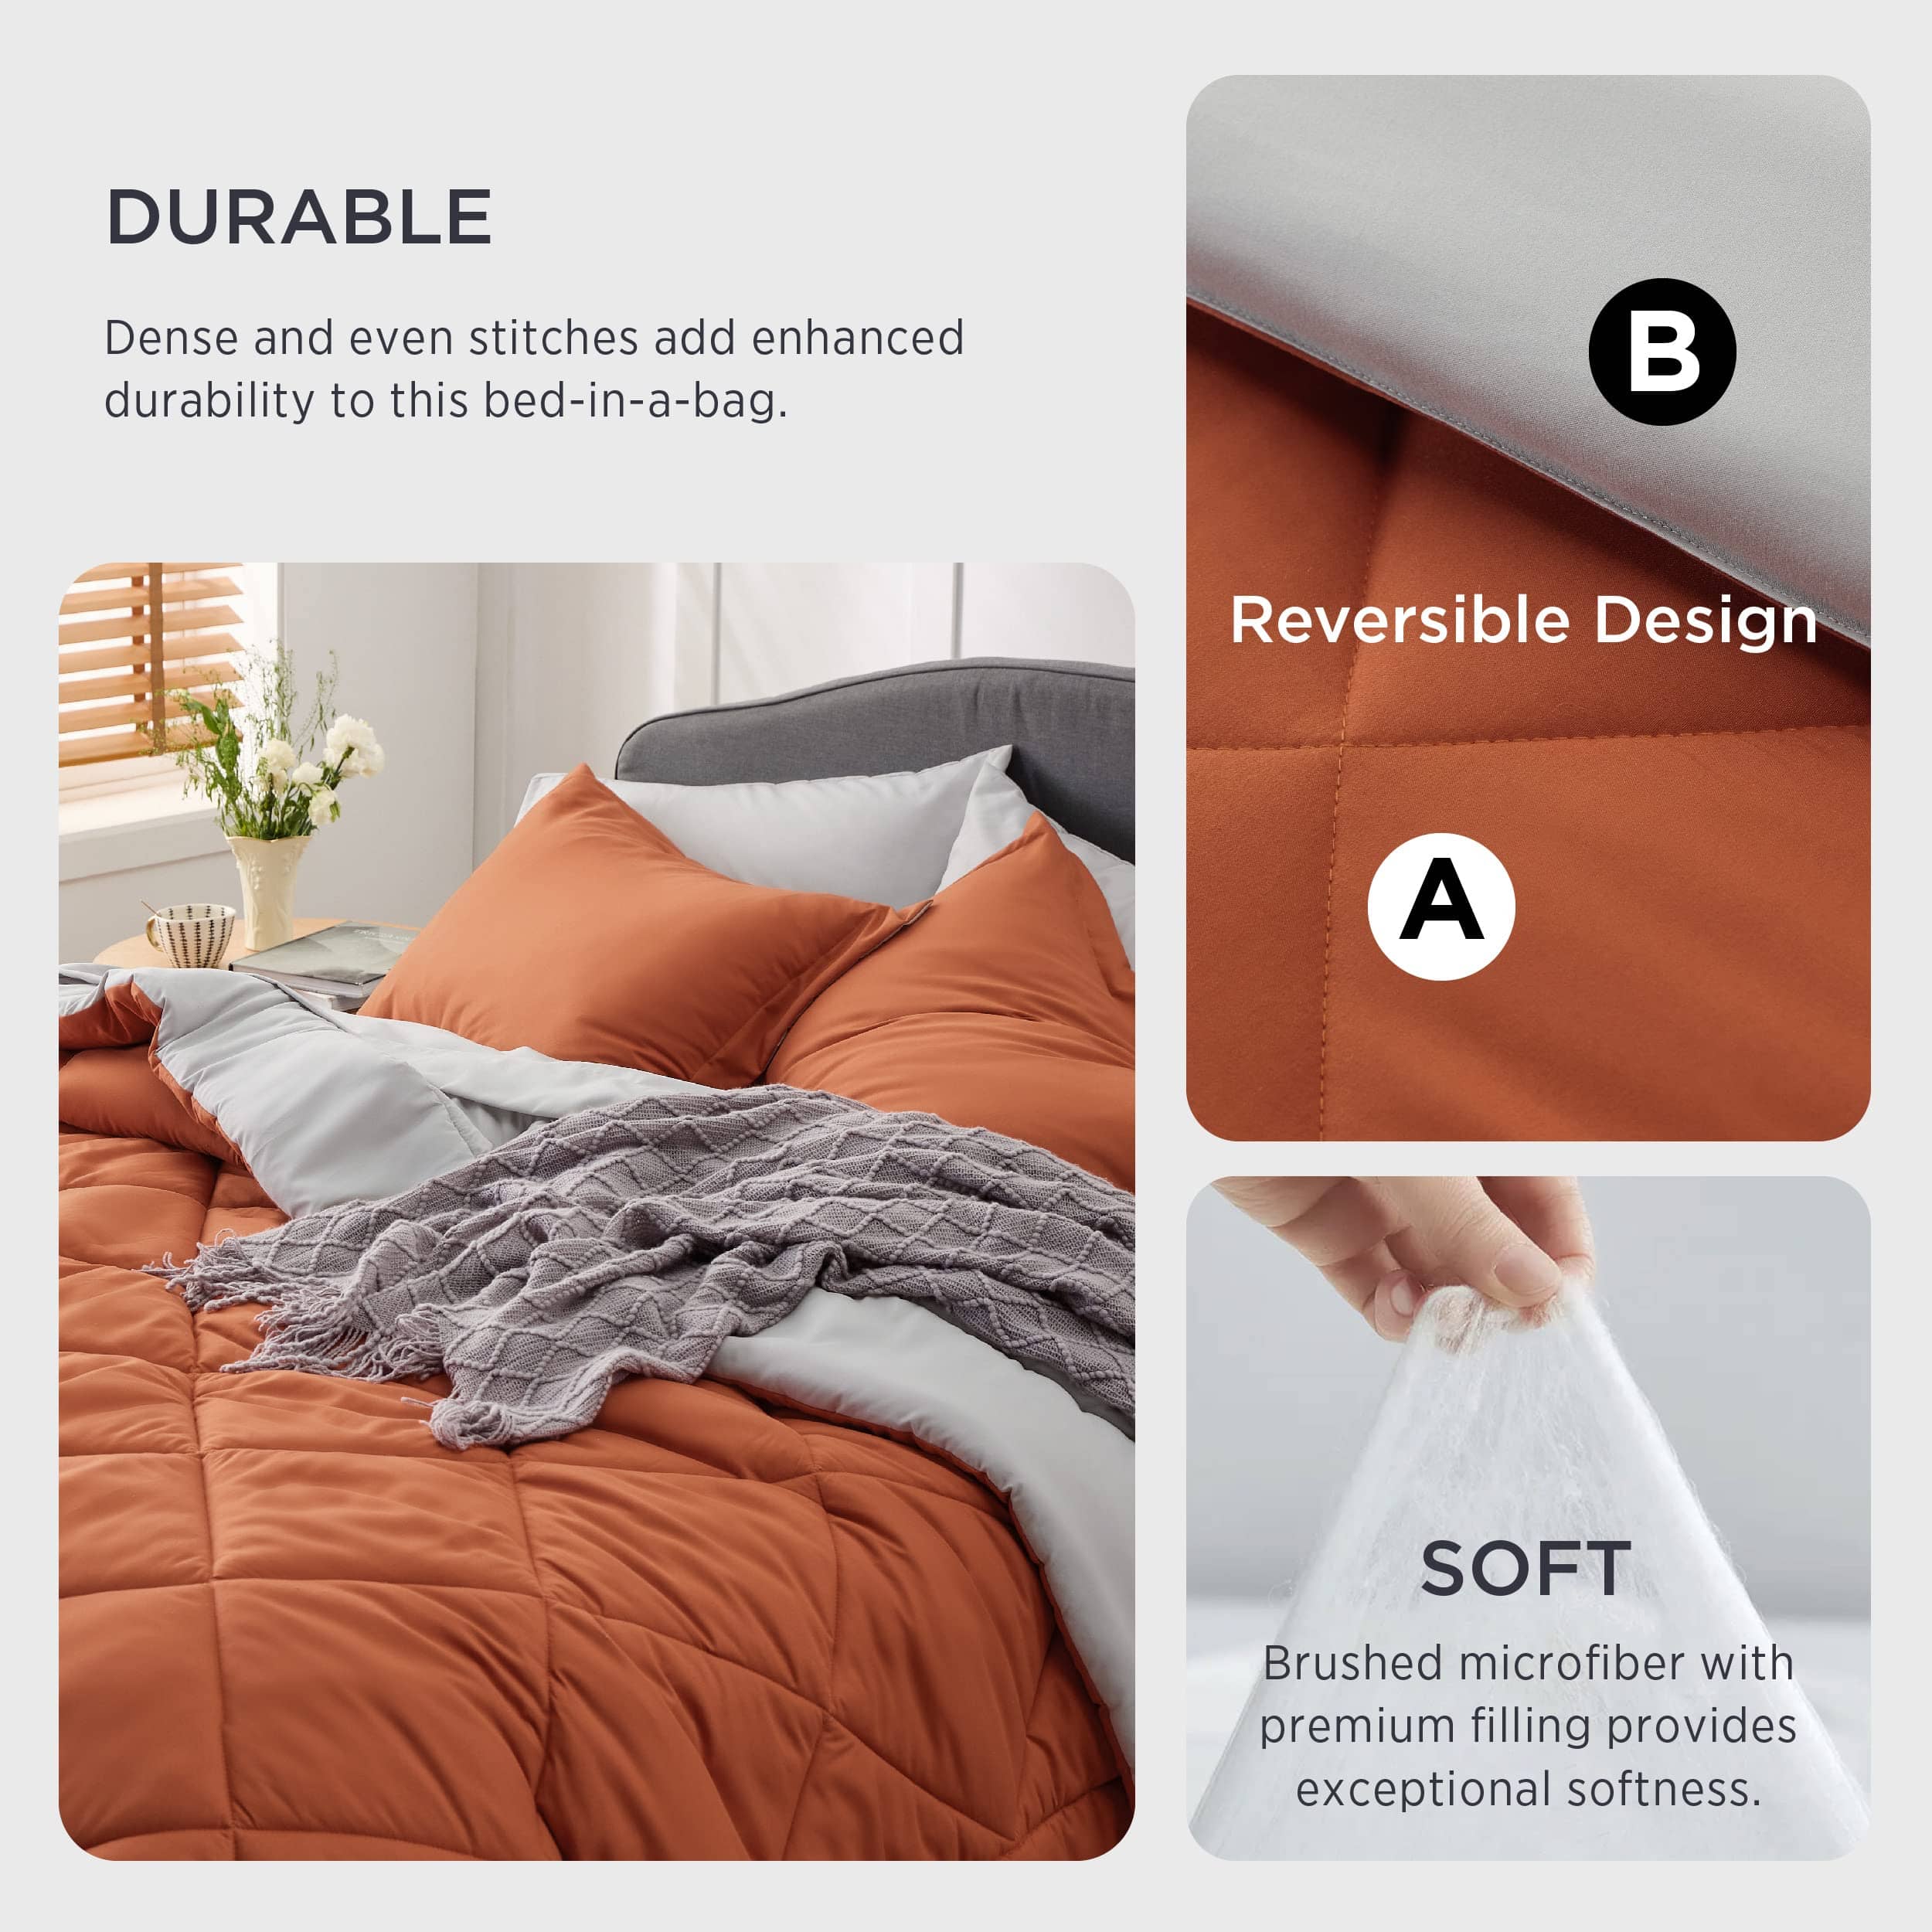 Comforter Sets Bedding In a Bag